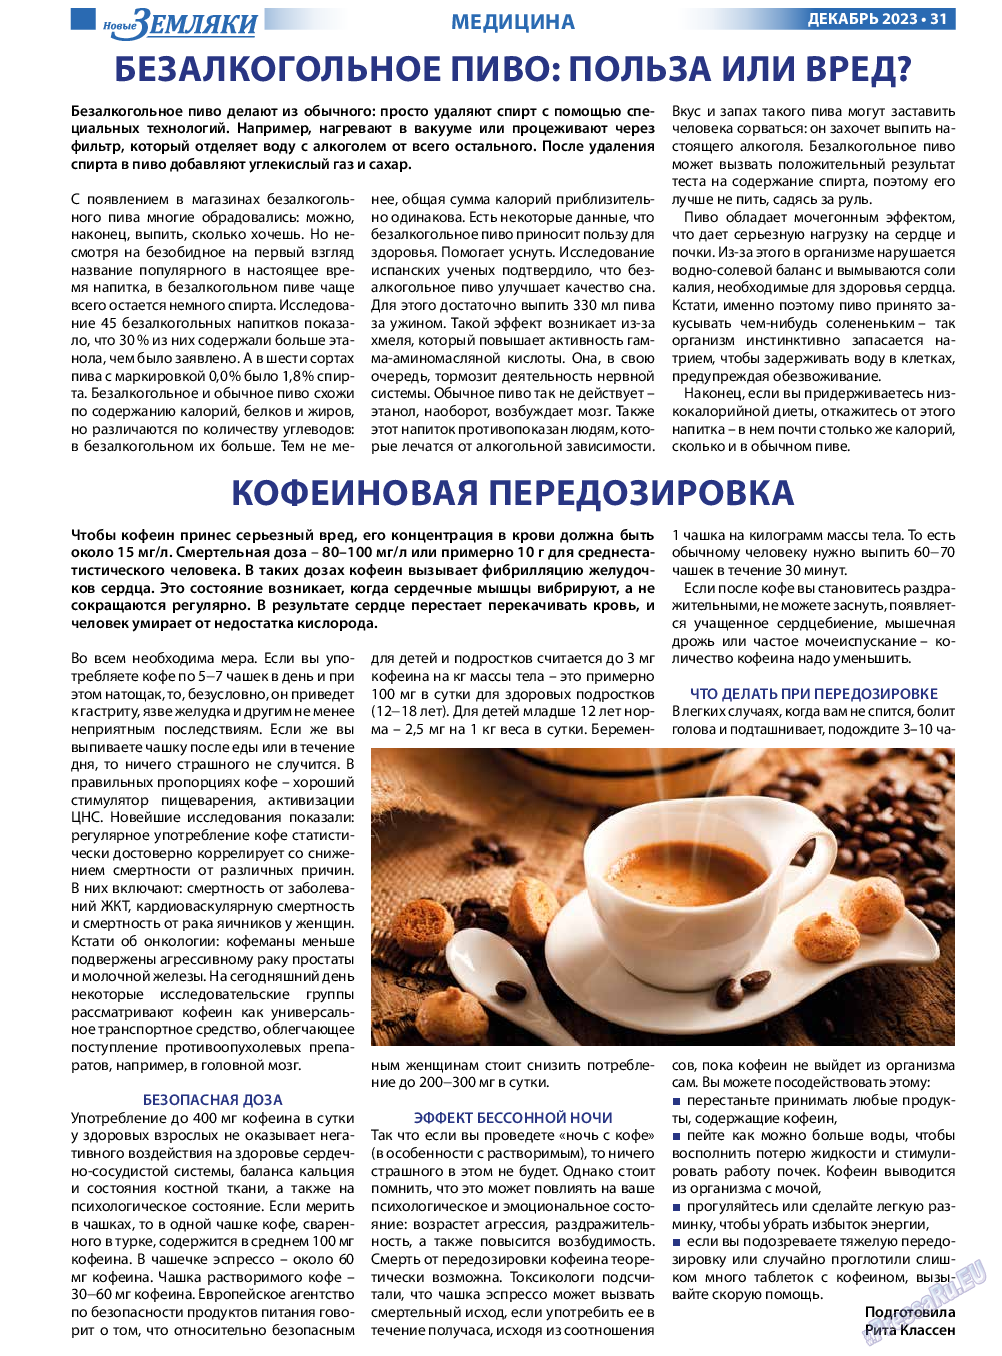 Новые Земляки, газета. 2023 №12 стр.31